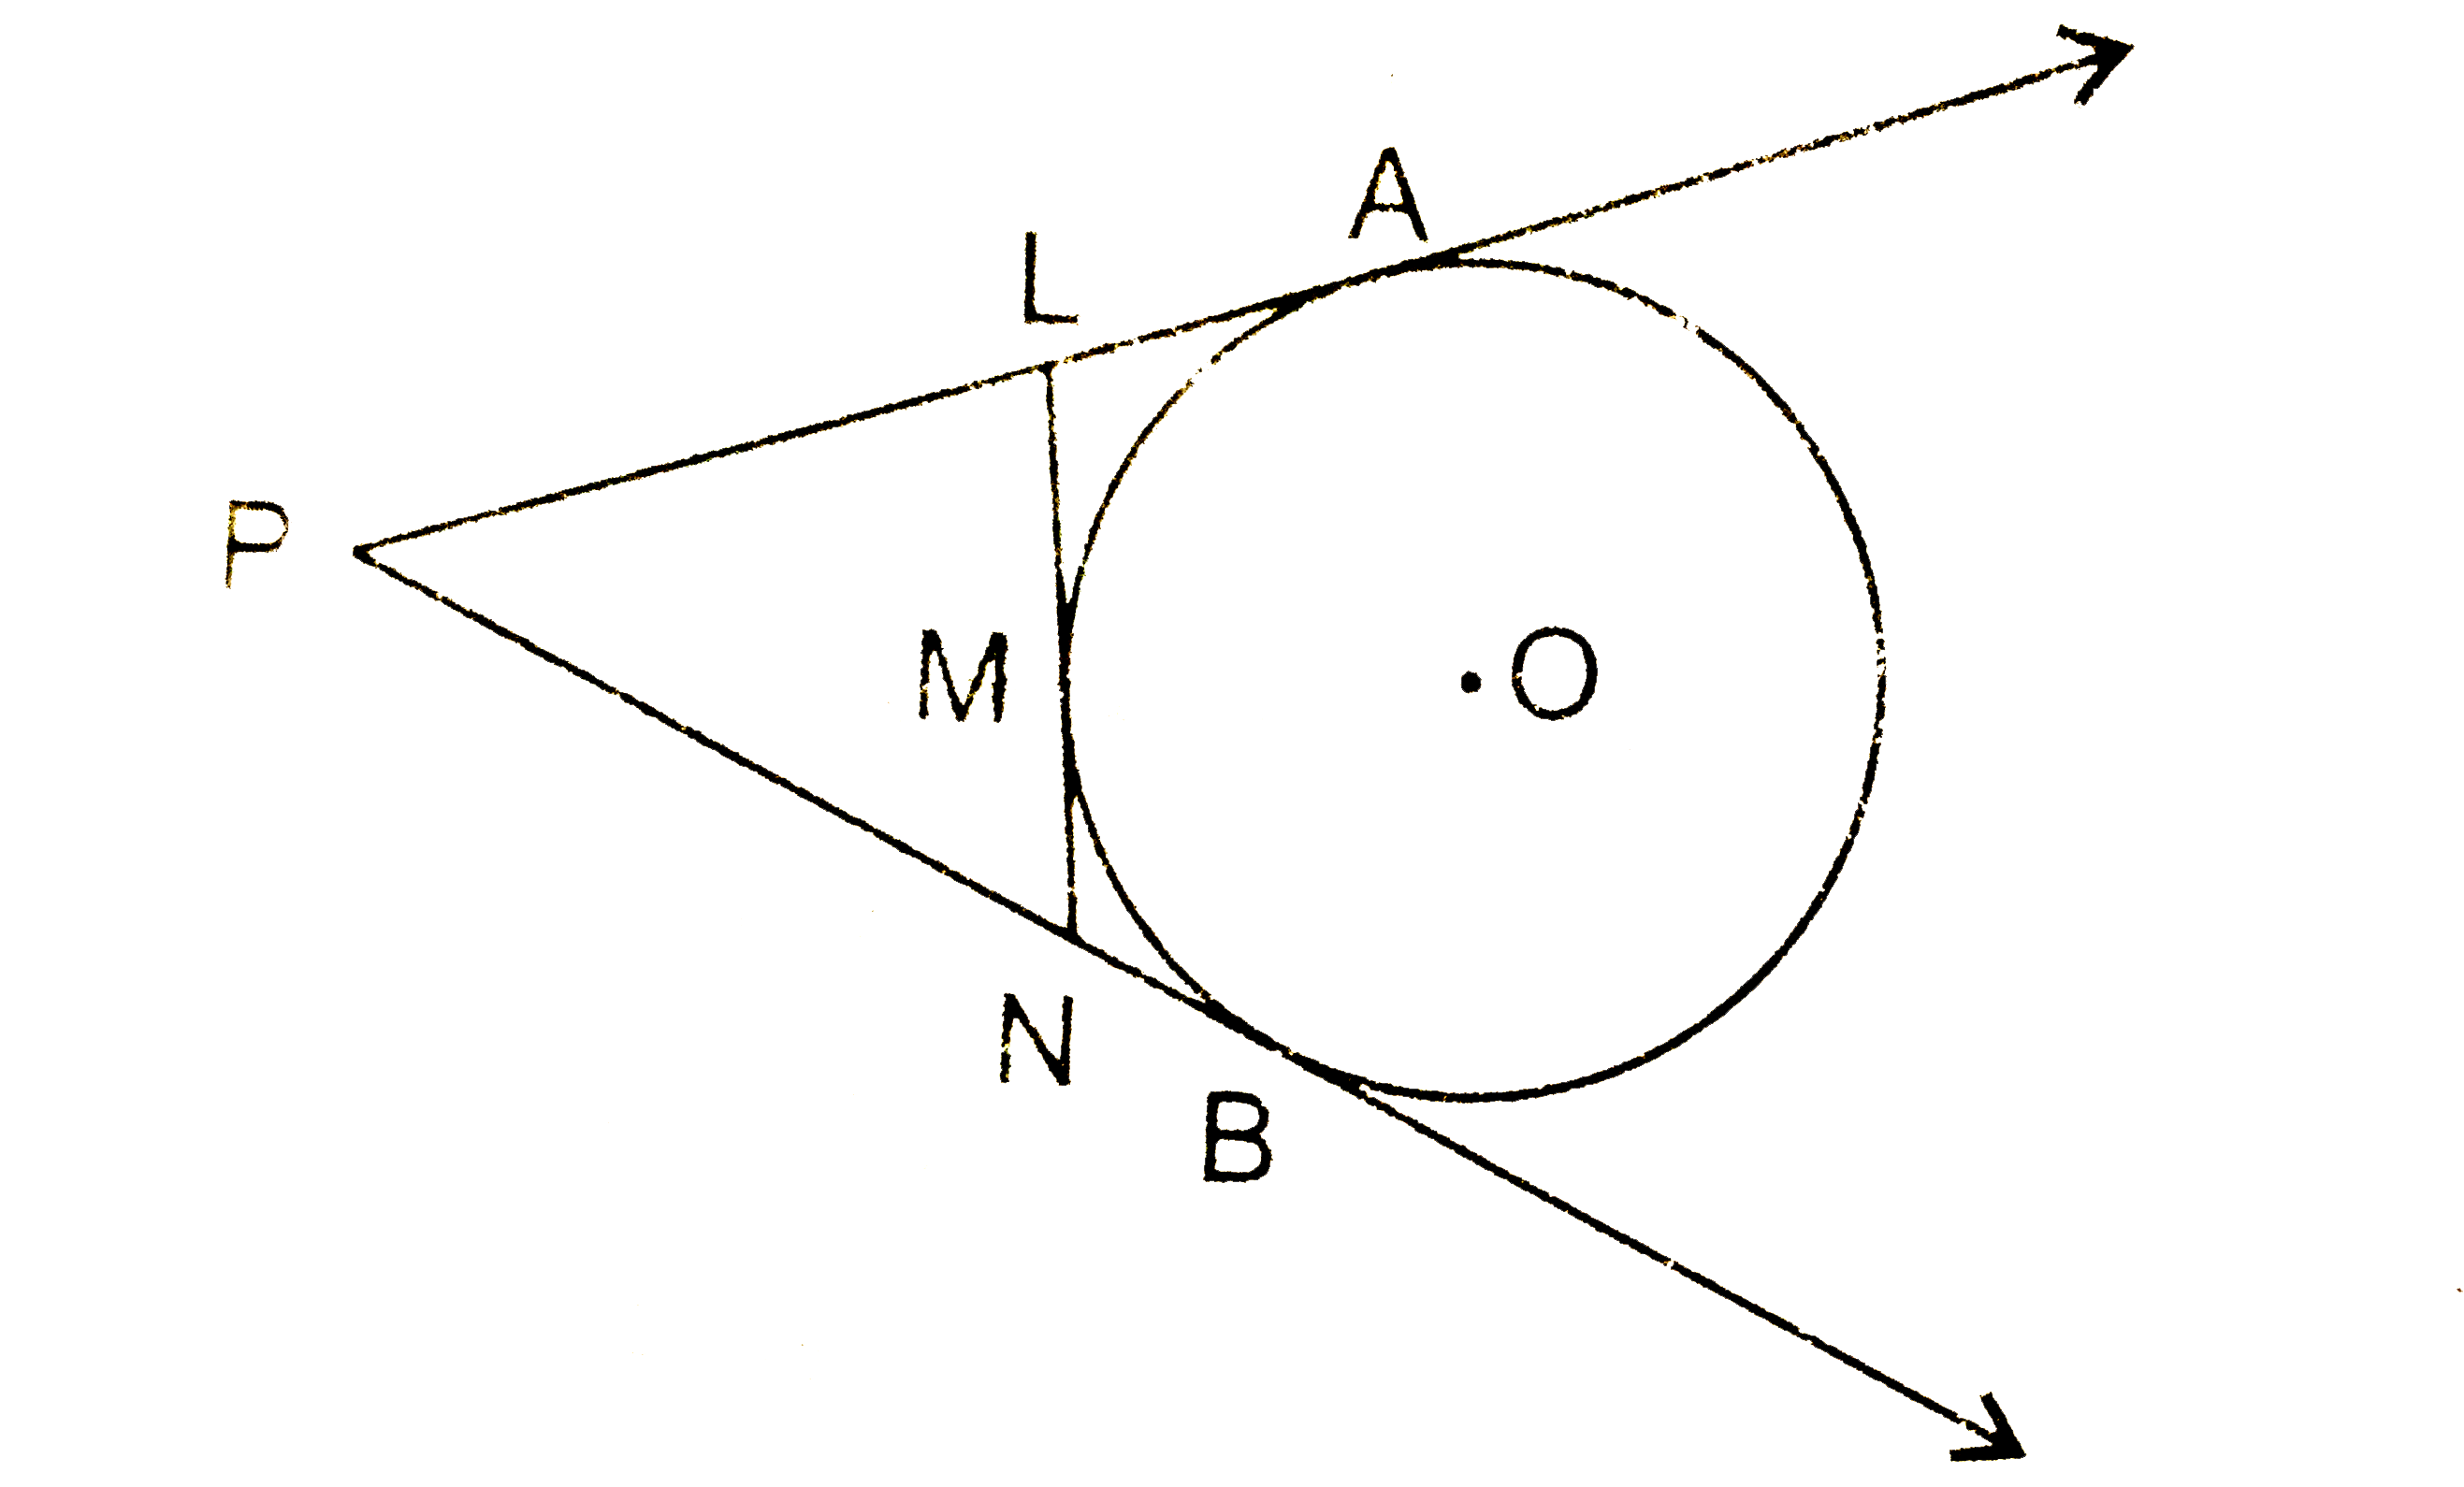 चित्र में, O केन्द्र के एक वृत्त पर बिन्दु P से PA तथा PB स्पर्श रेखाएँ खींची गई हैं । LN रेखाखण्ड वृत्त को M पर स्पर्श करता हैं, तो सिद्ध कीजिए कि PL + LM = PN + NM